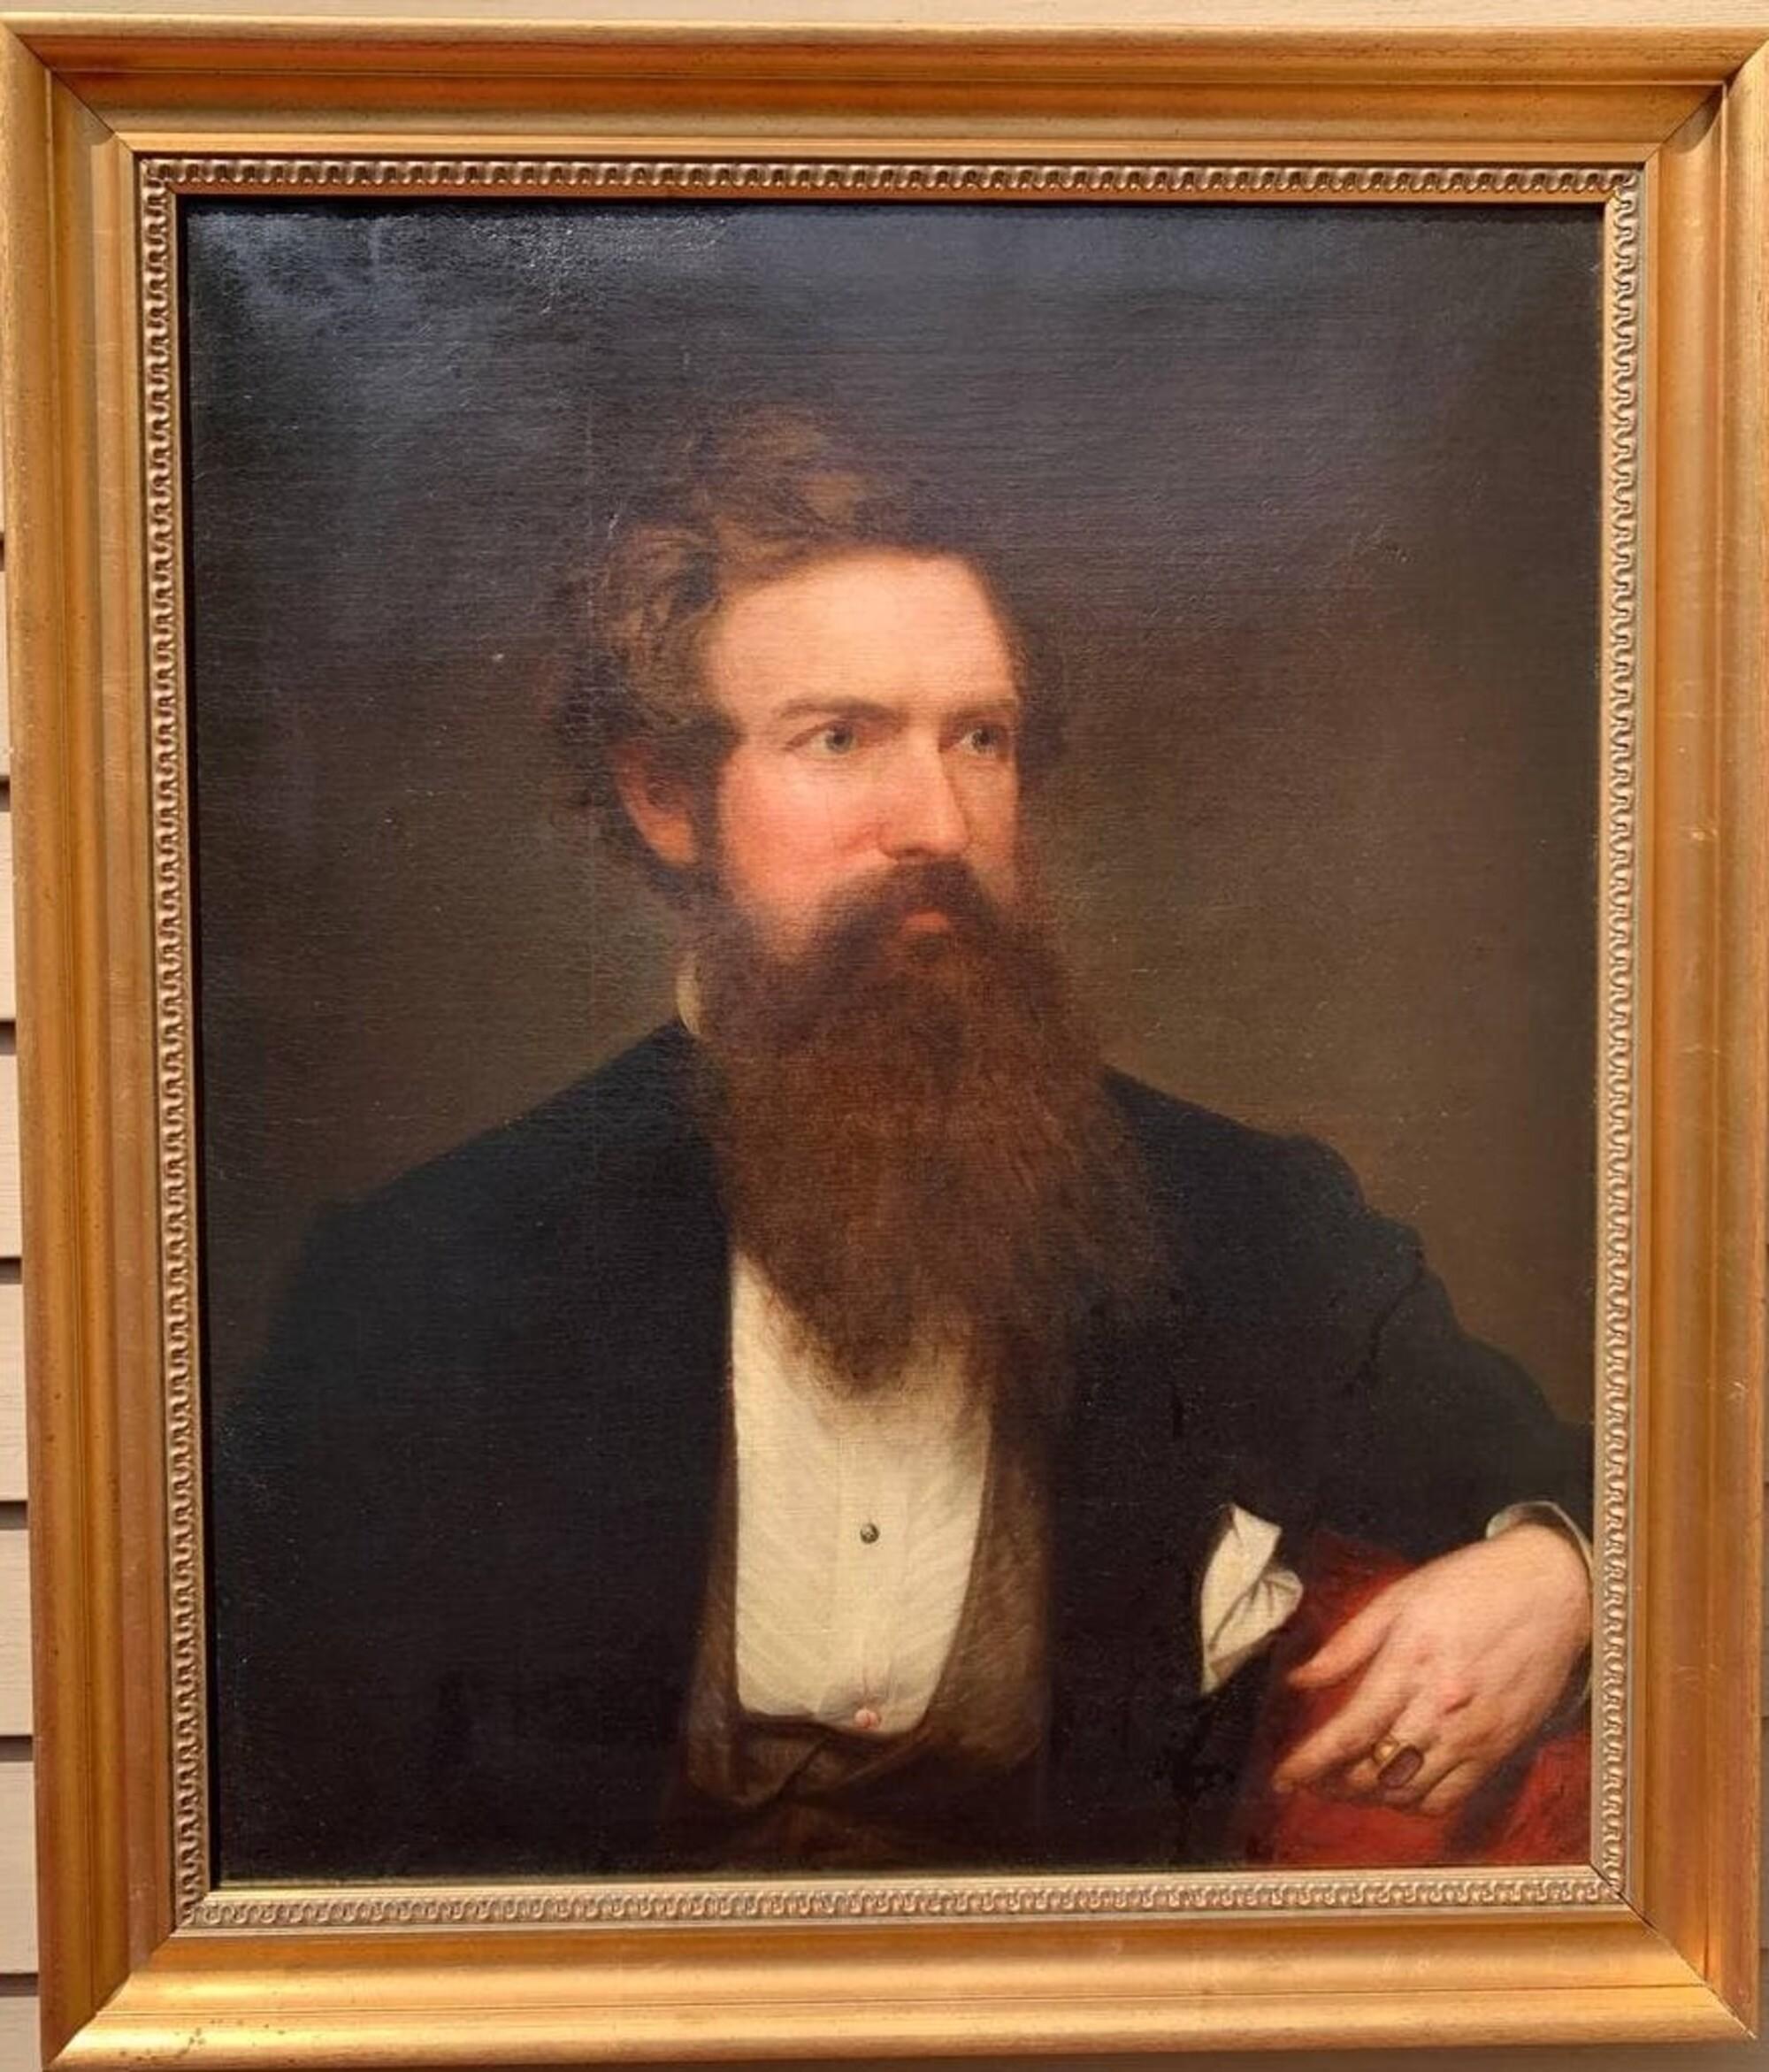 Nous proposons à la vente une superbe peinture à l'huile ancienne sur toile du célèbre artiste américain Henry Peters Gray (1819-1877), représentant le portrait d'un W.P. Wright Esq.

Certaines de ses peintures sont exposées au Metropolitan Museum